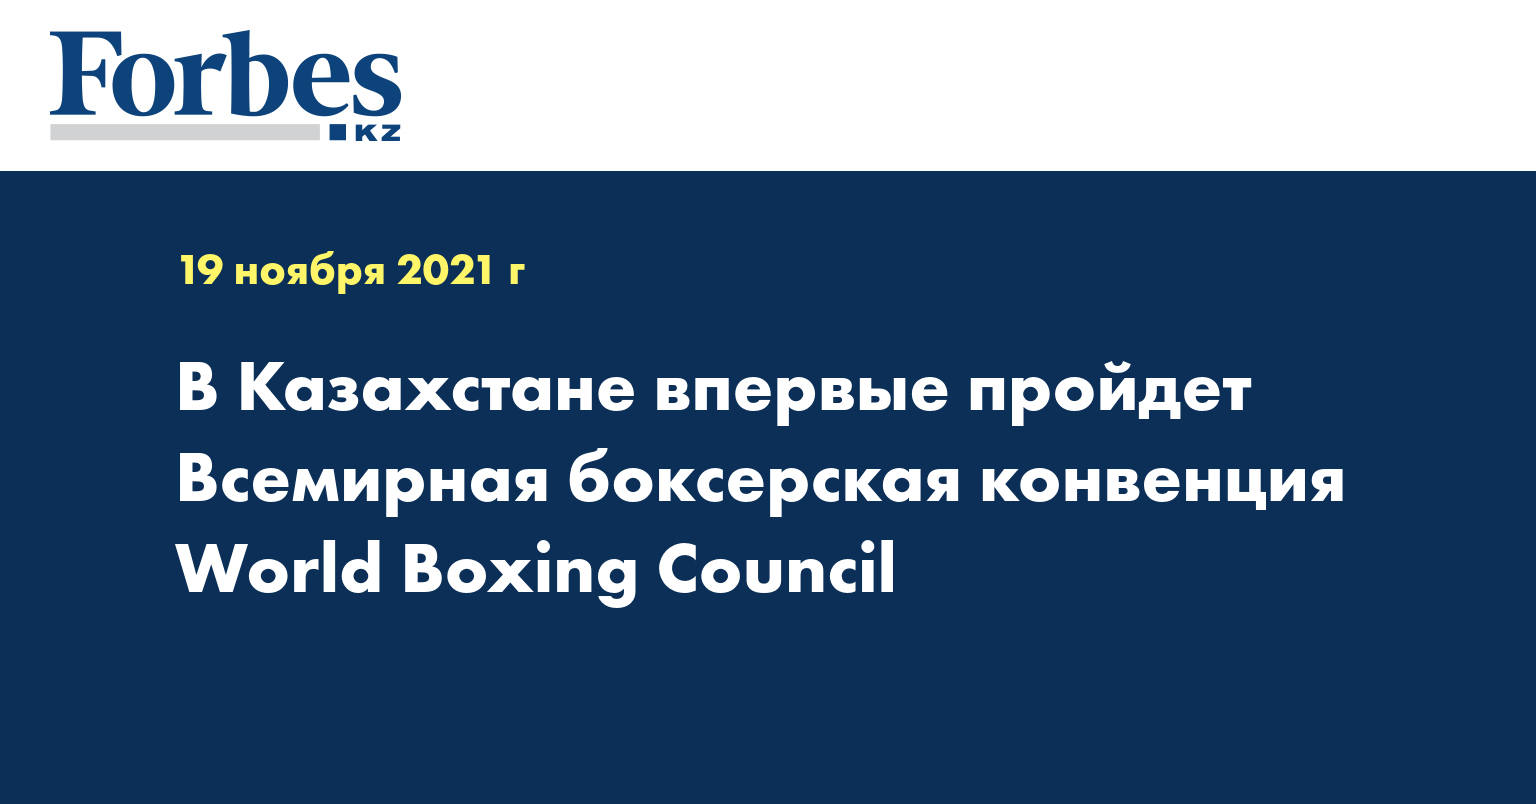 В Казахстане впервые пройдет Всемирная боксерская конвенция World Boxing Council